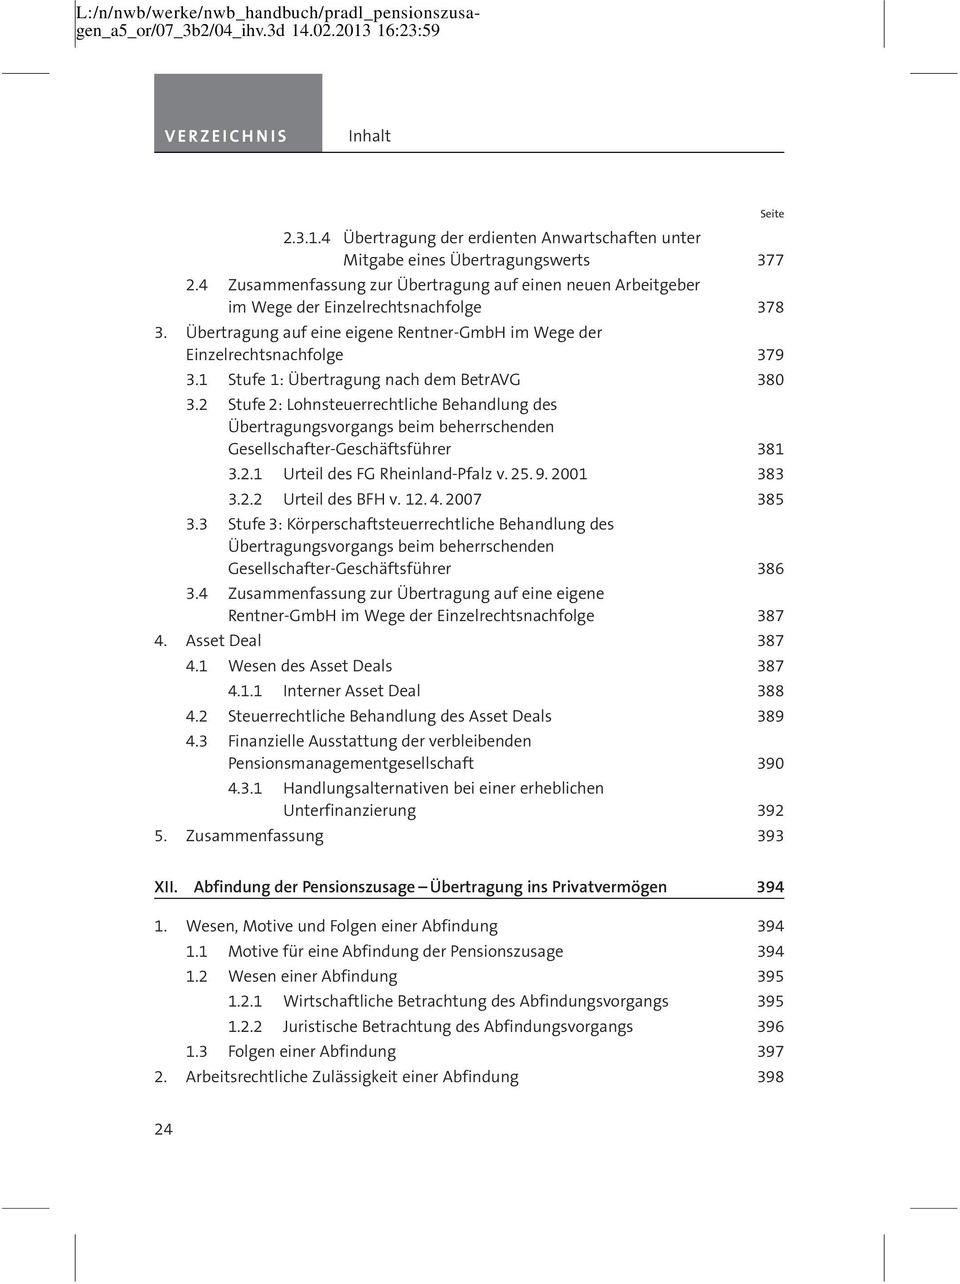 2 Stufe 2: Lohnsteuerrechtliche Behandlung des Ûbertragungsvorgangs beim beherrschenden Gesellschafter-GeschåftsfÅhrer 381 3.2.1 Urteil des FG Rheinland-Pfalz v. 25. 9. 2001 383 3.2.2 Urteil des BFH v.